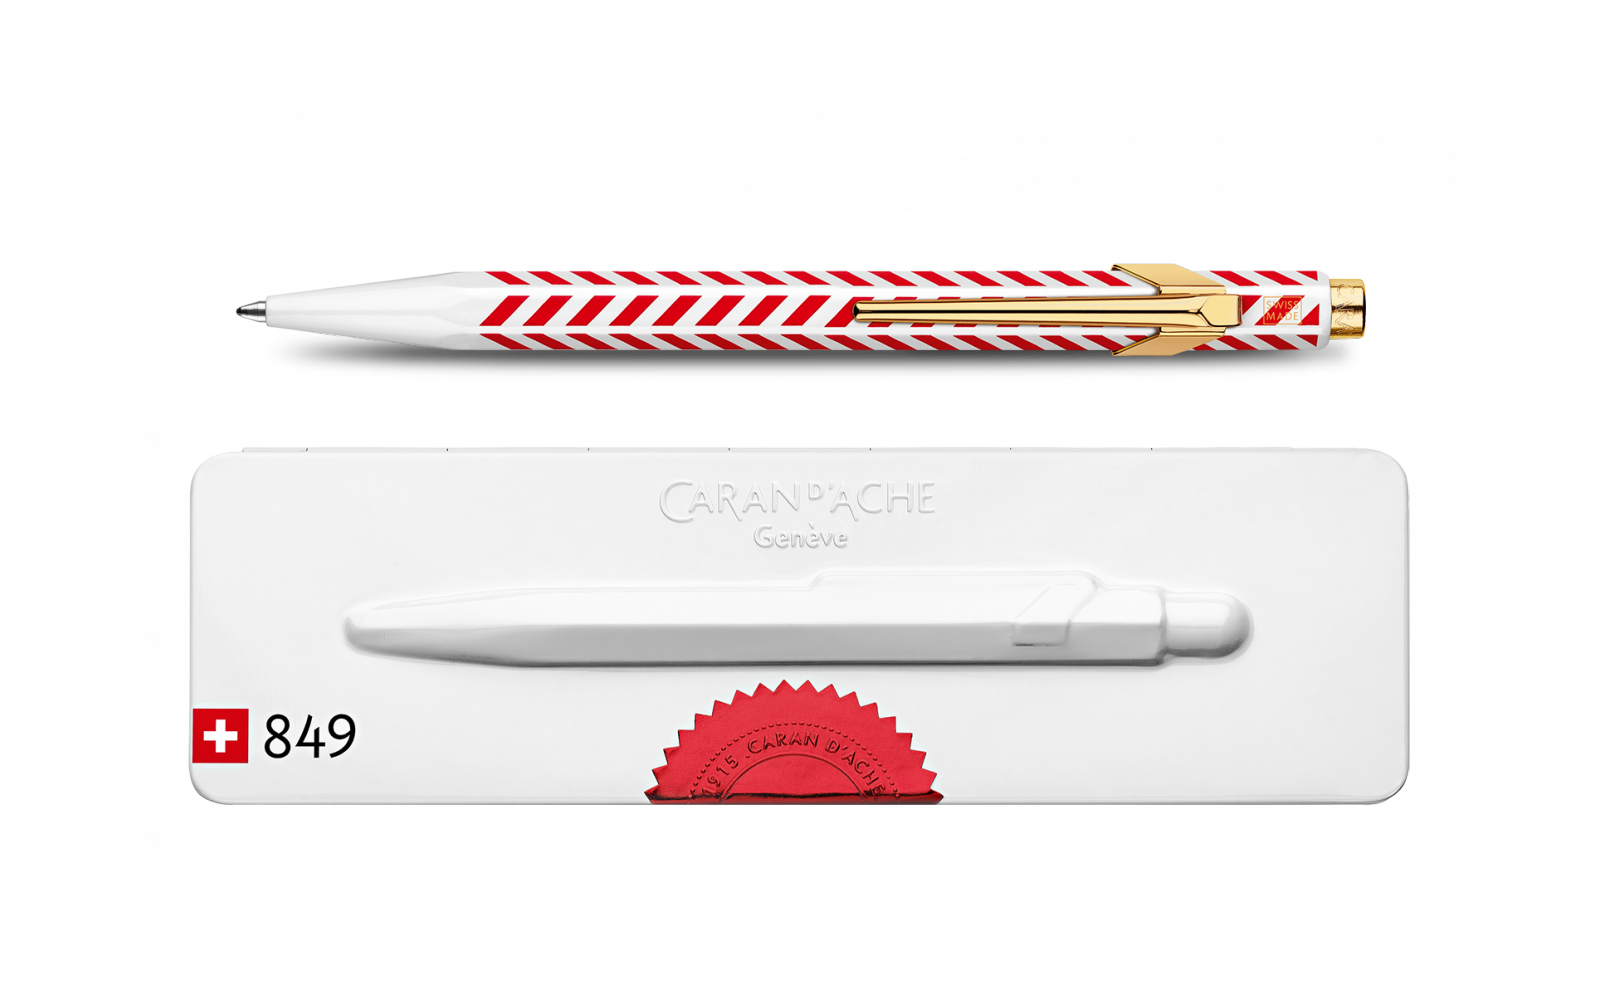 Caran d'Ache 849 Chevron Limited Edition pen